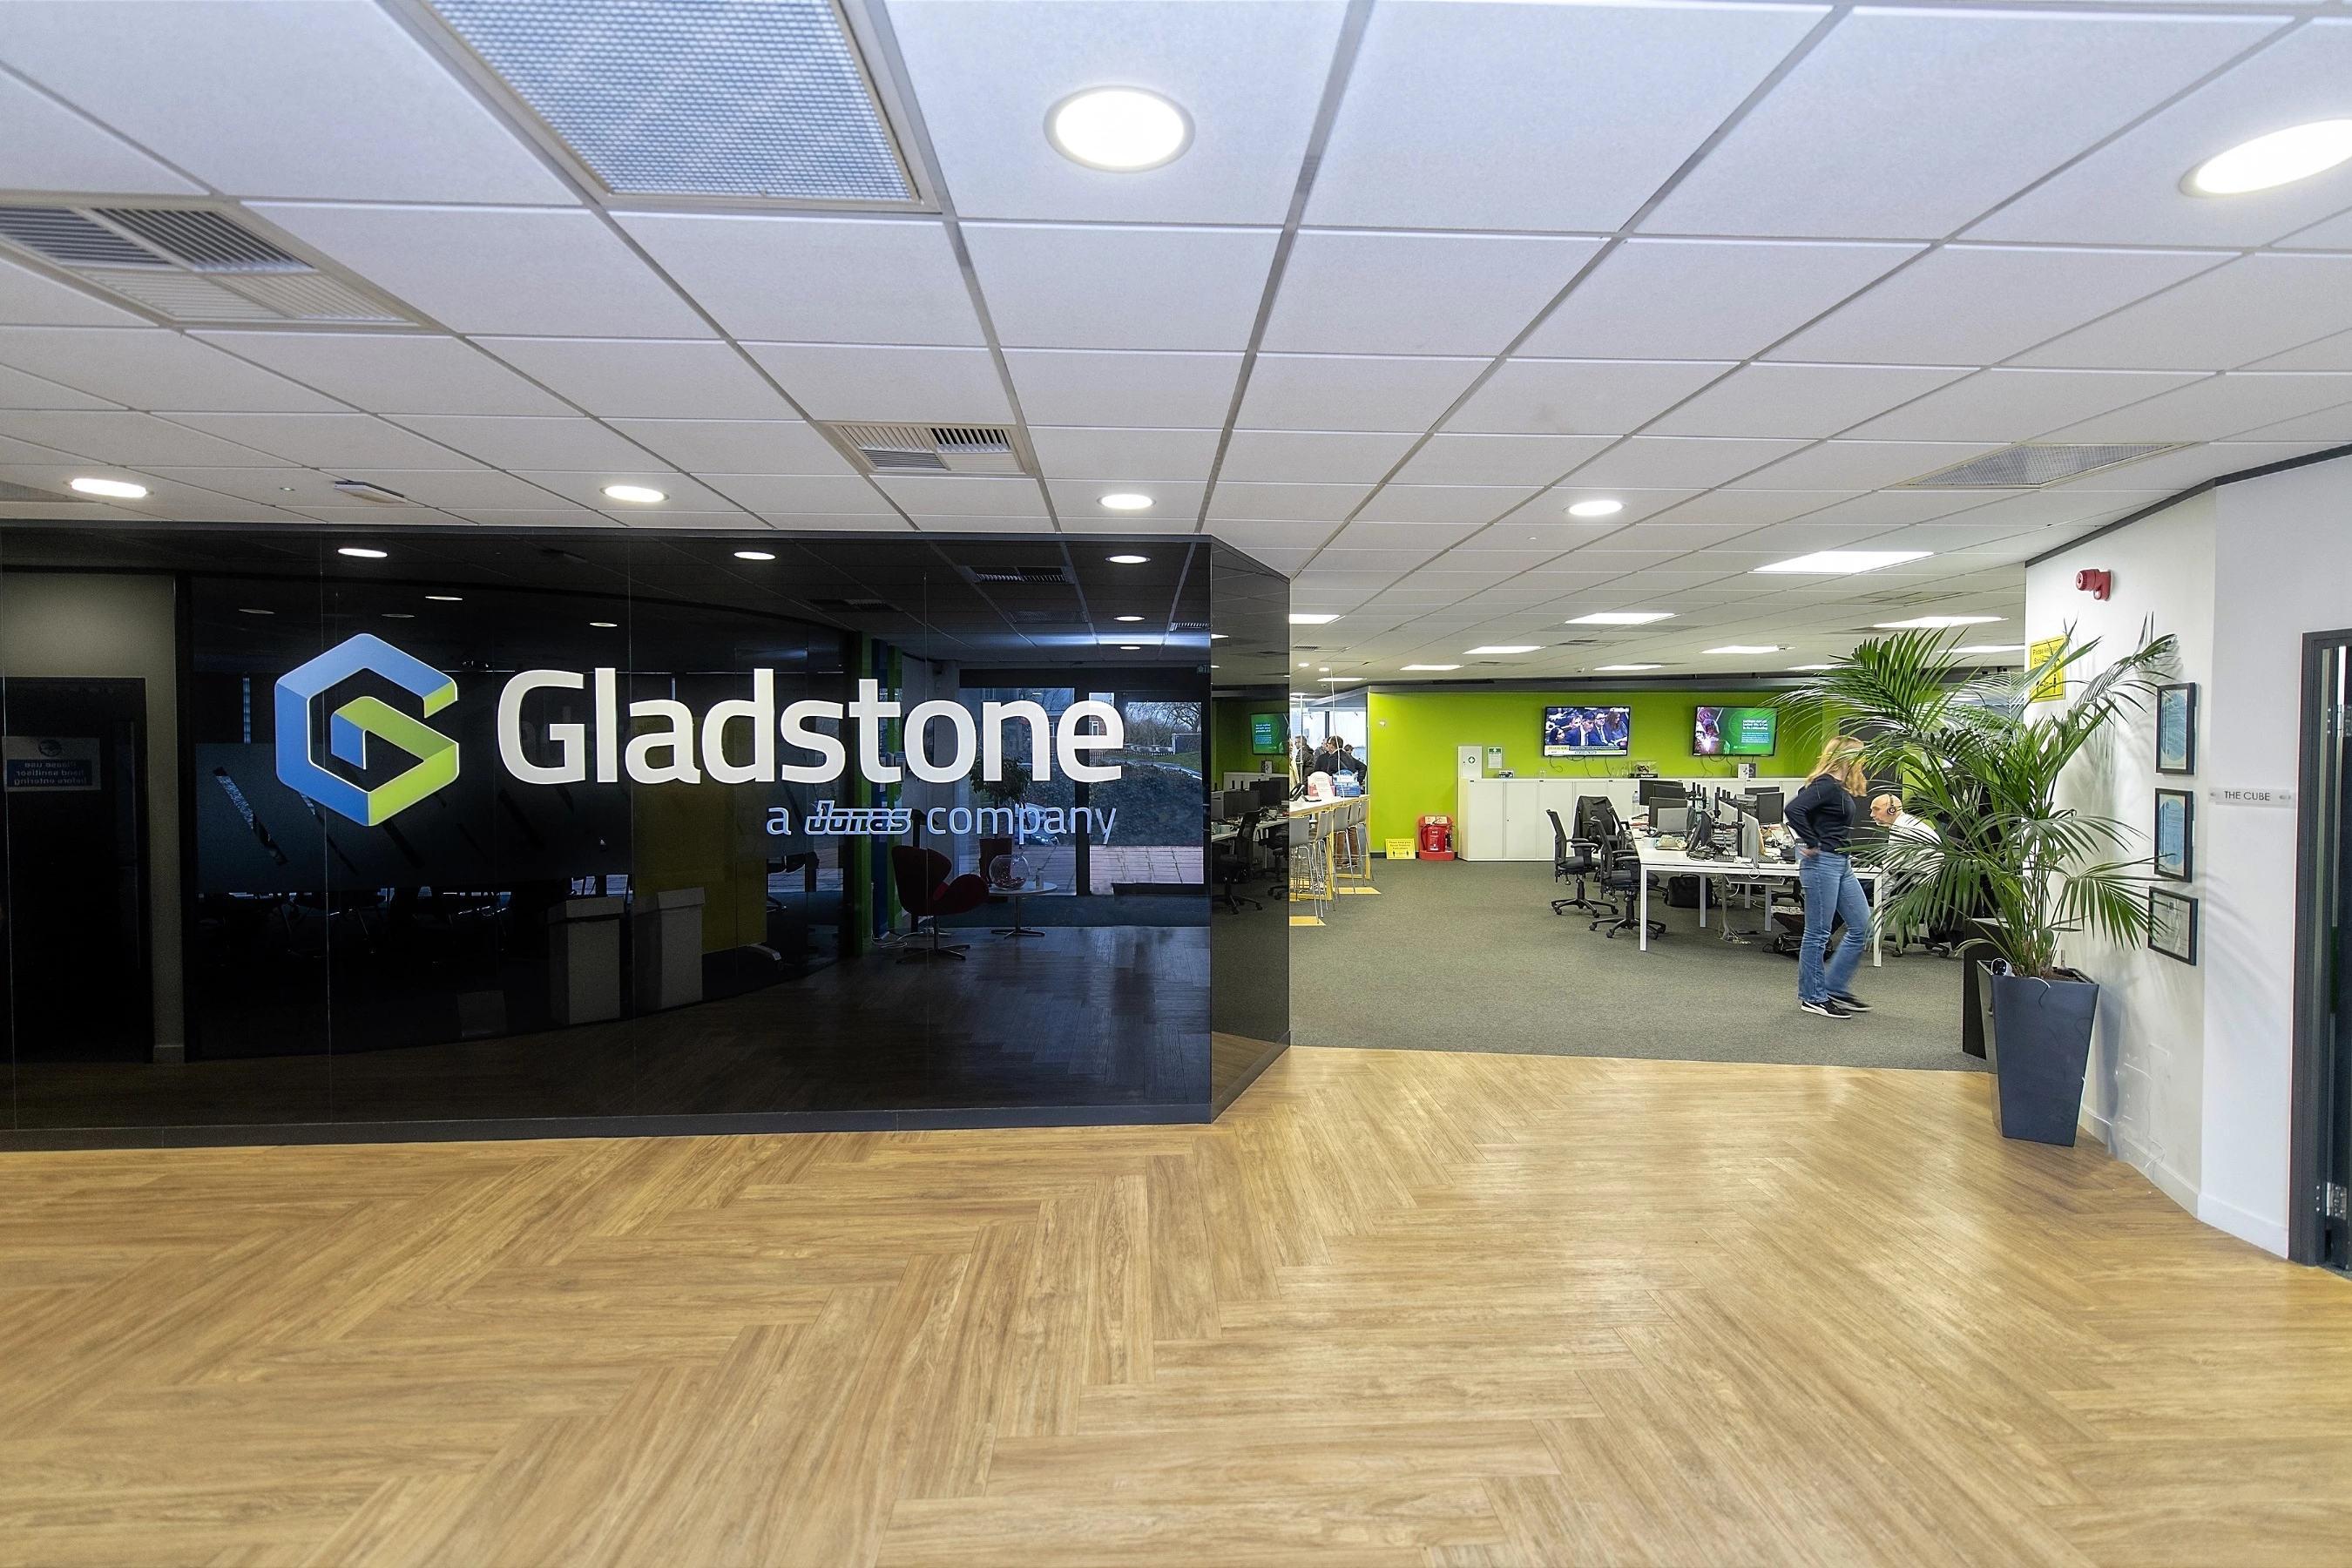 Gladstone headquarters, Oxford